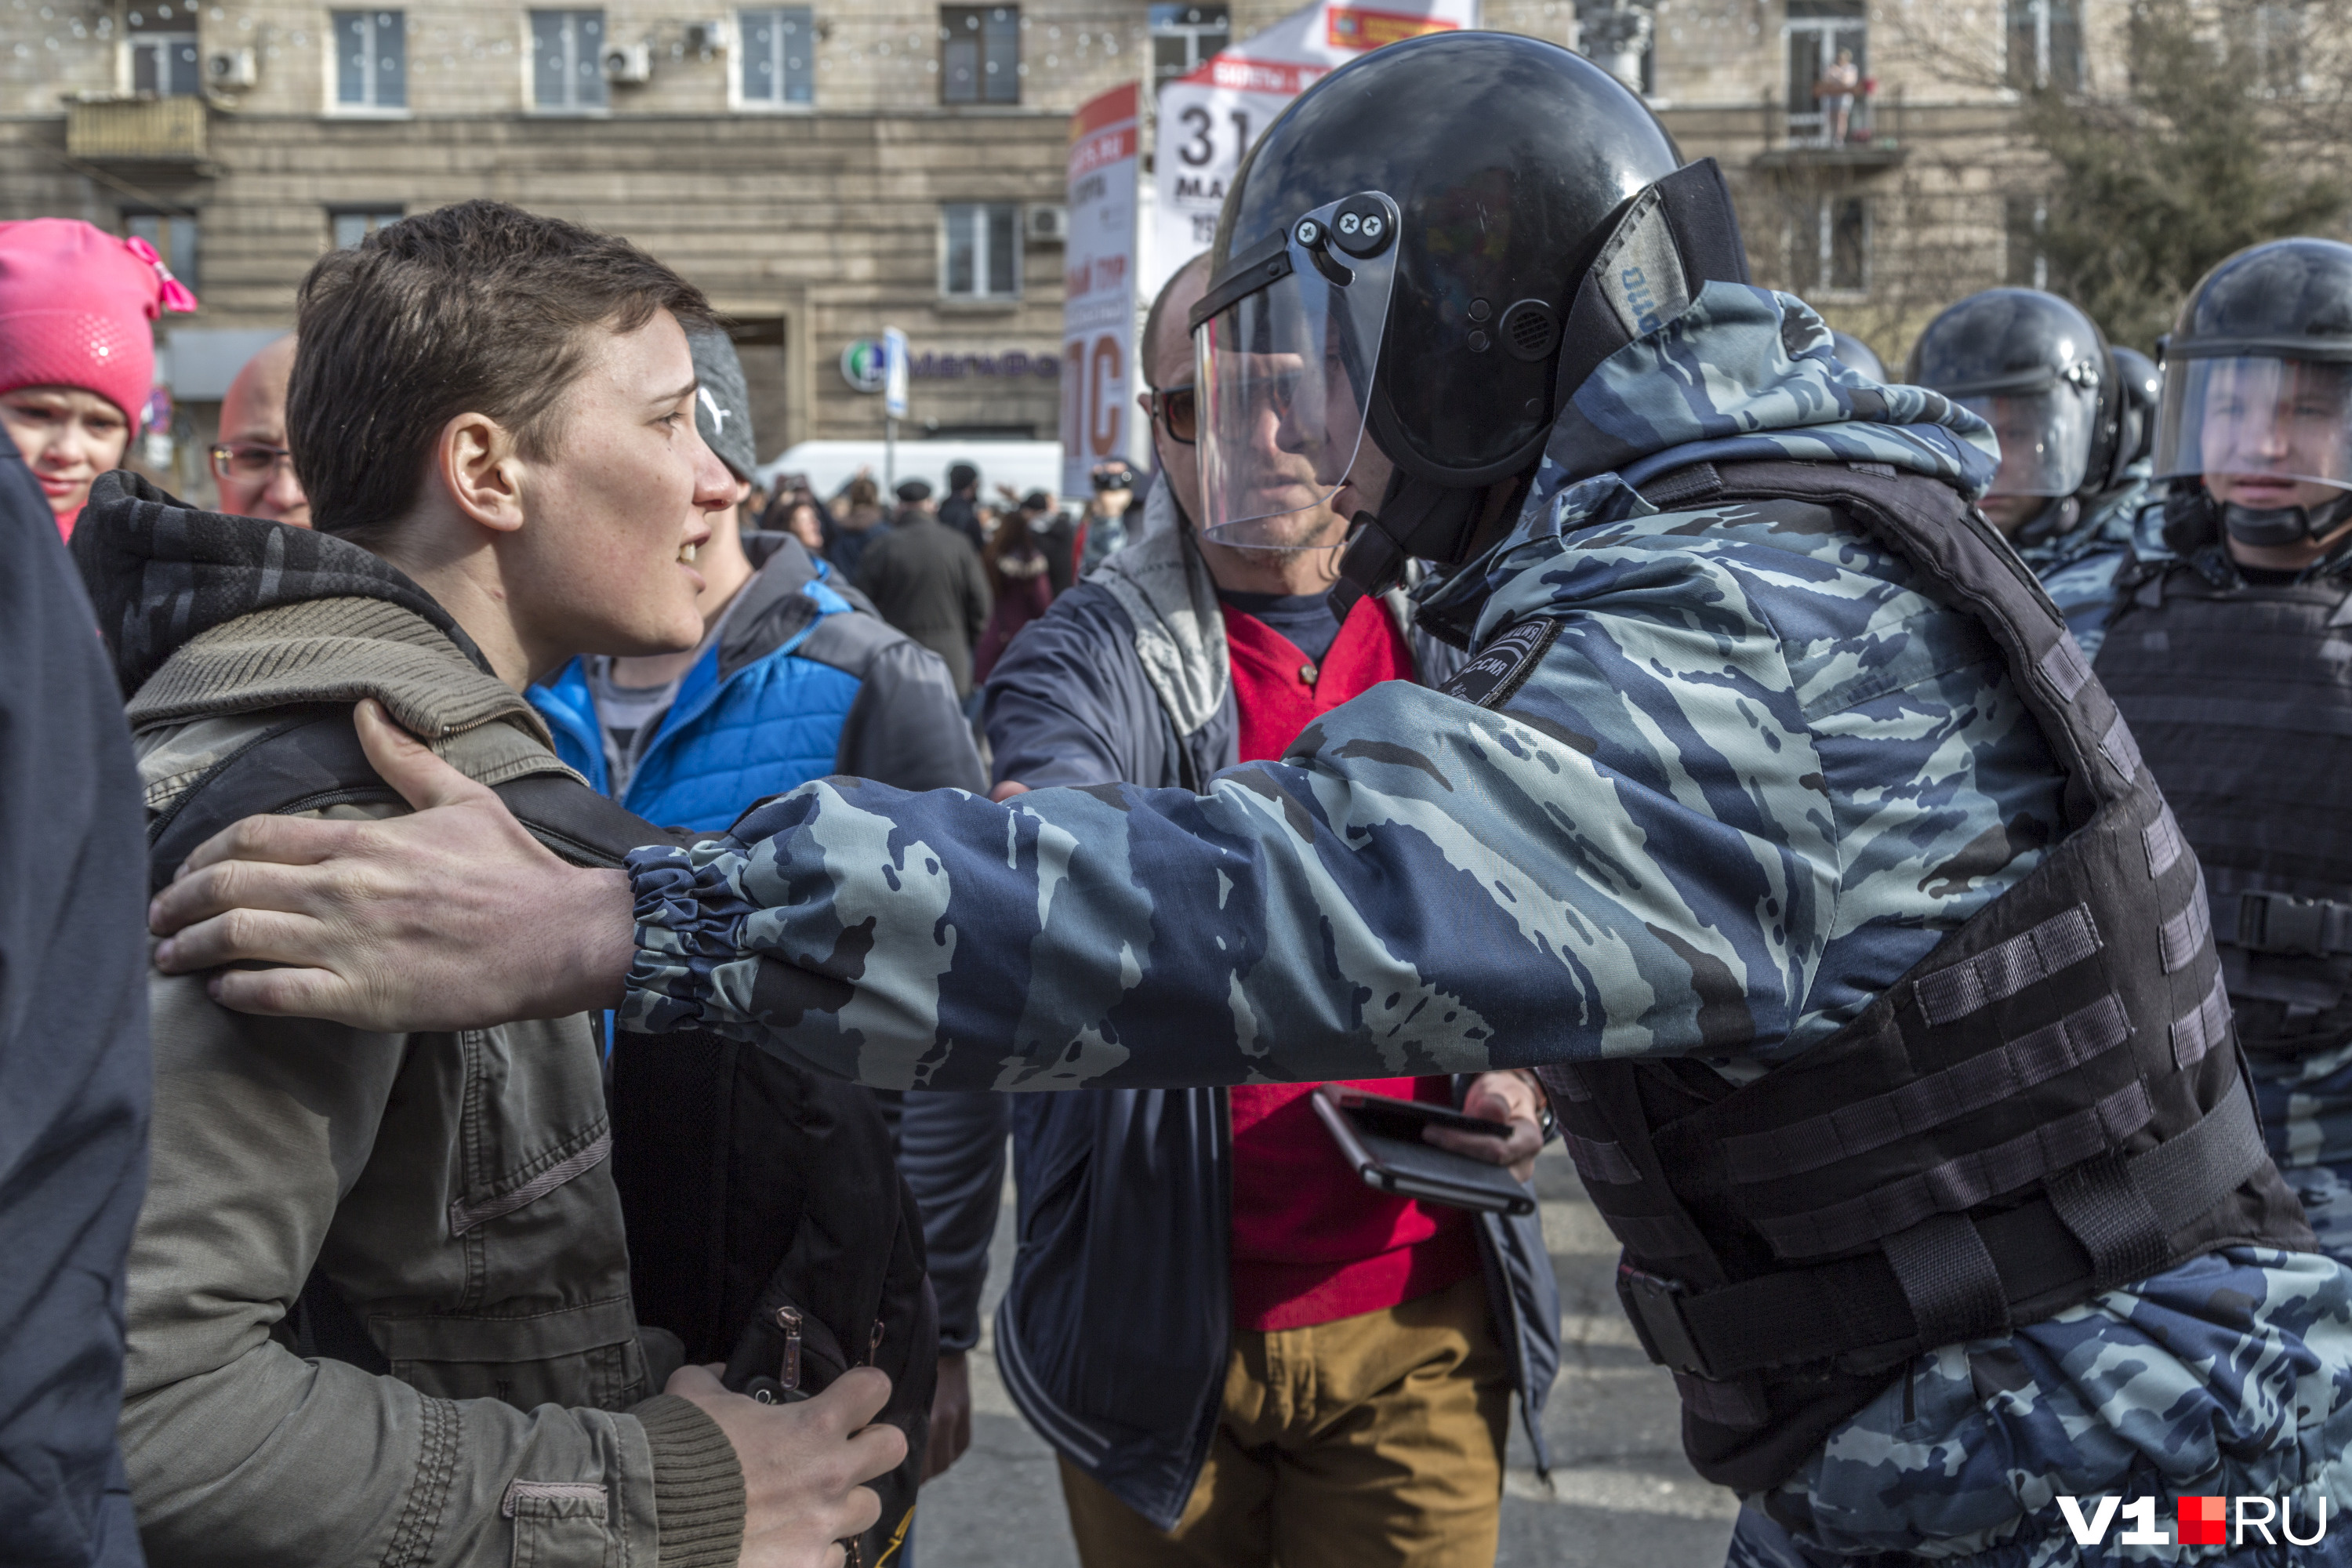 Дети на митинге навального. Молодежь на митинге. Молодежь на митингах Навального. Несанкционированный митинг. Дебилы на митинге.